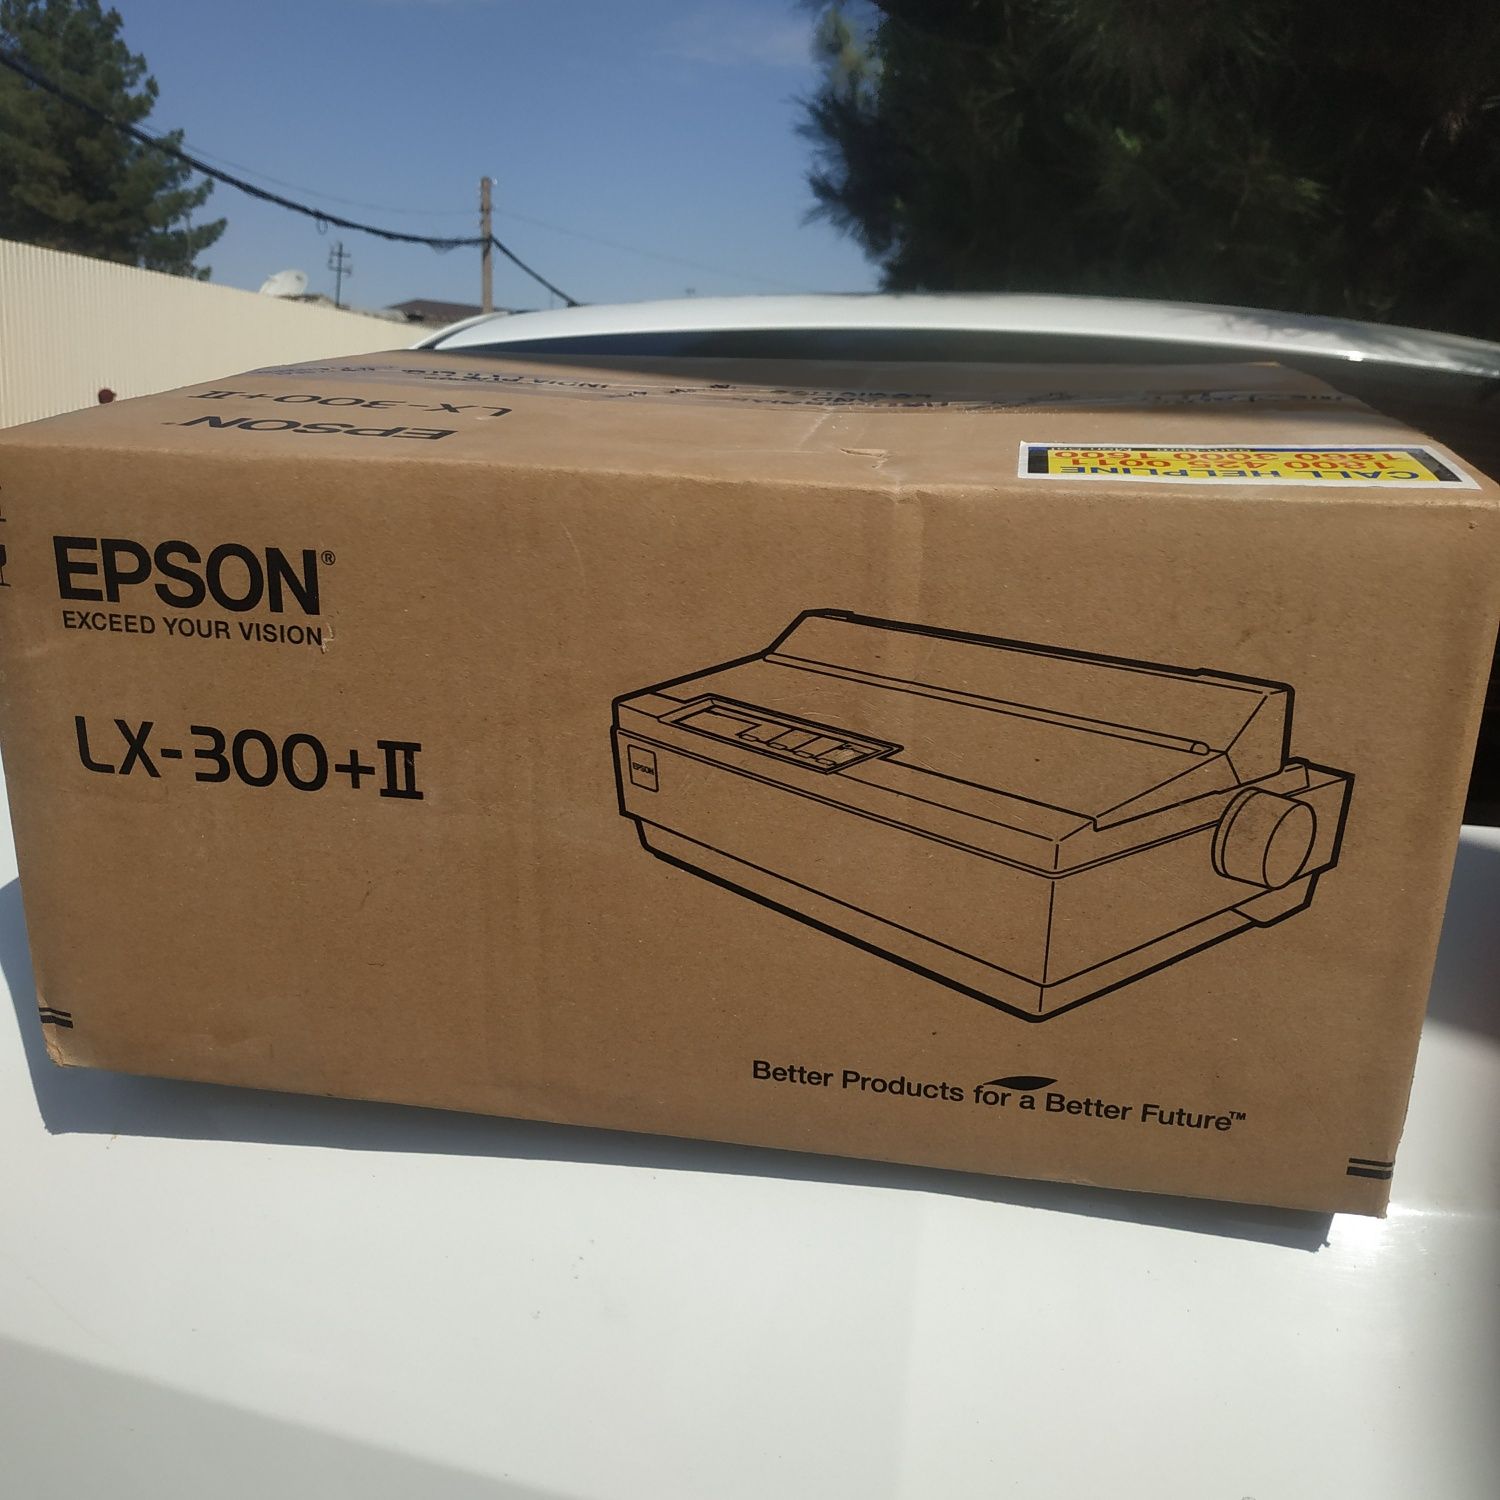 Epson LX-300+ll printer